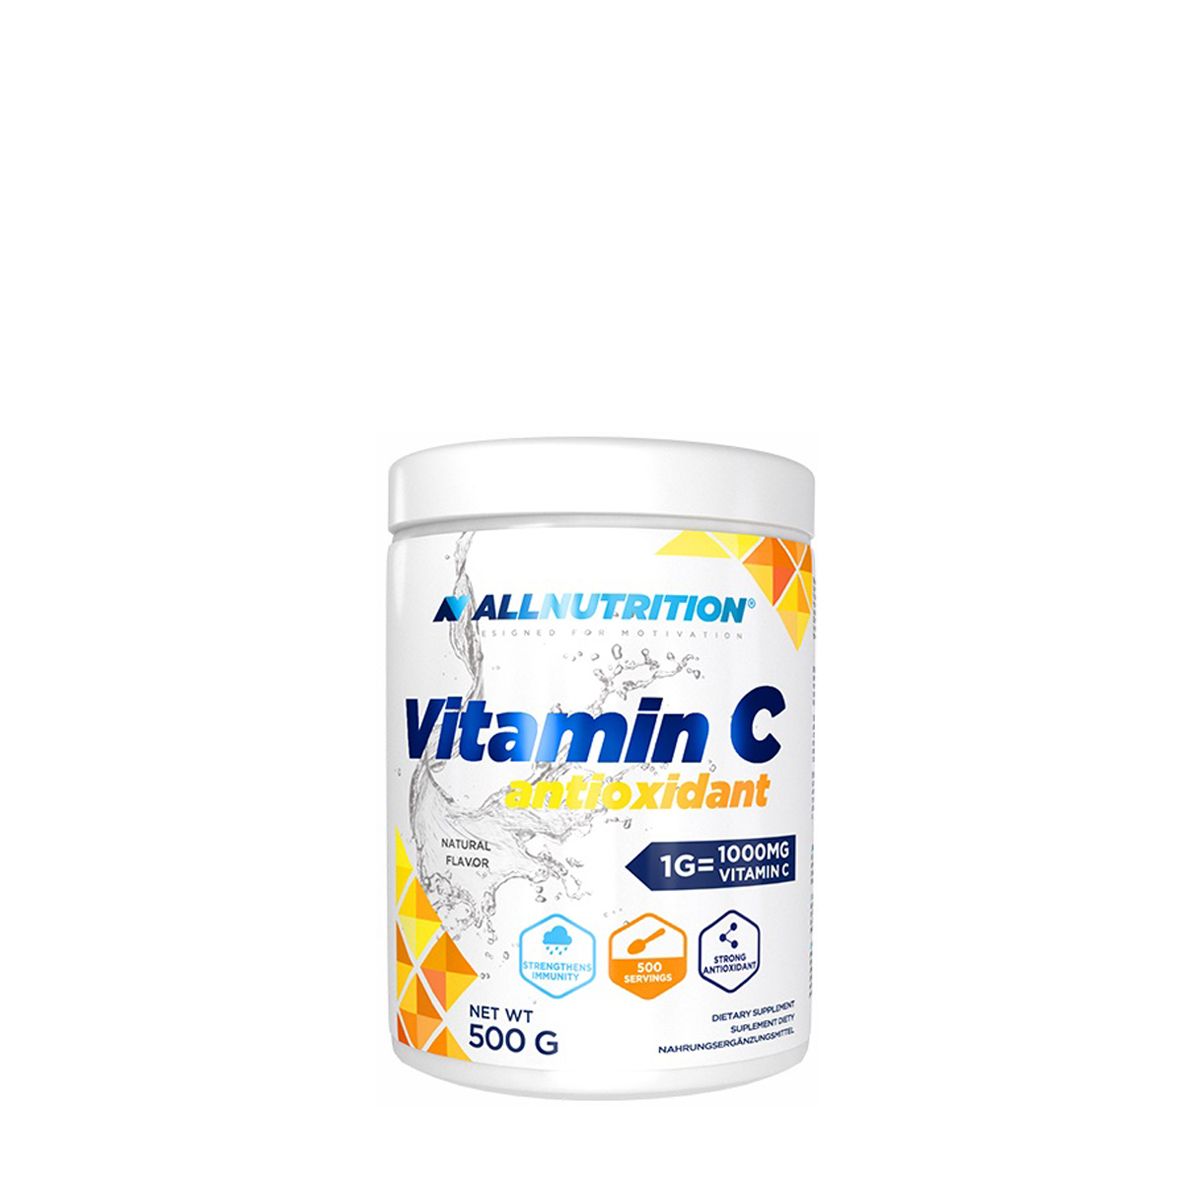 ALLNUTRITION - VITAMIN C ANTIOXIDANT - 500 G